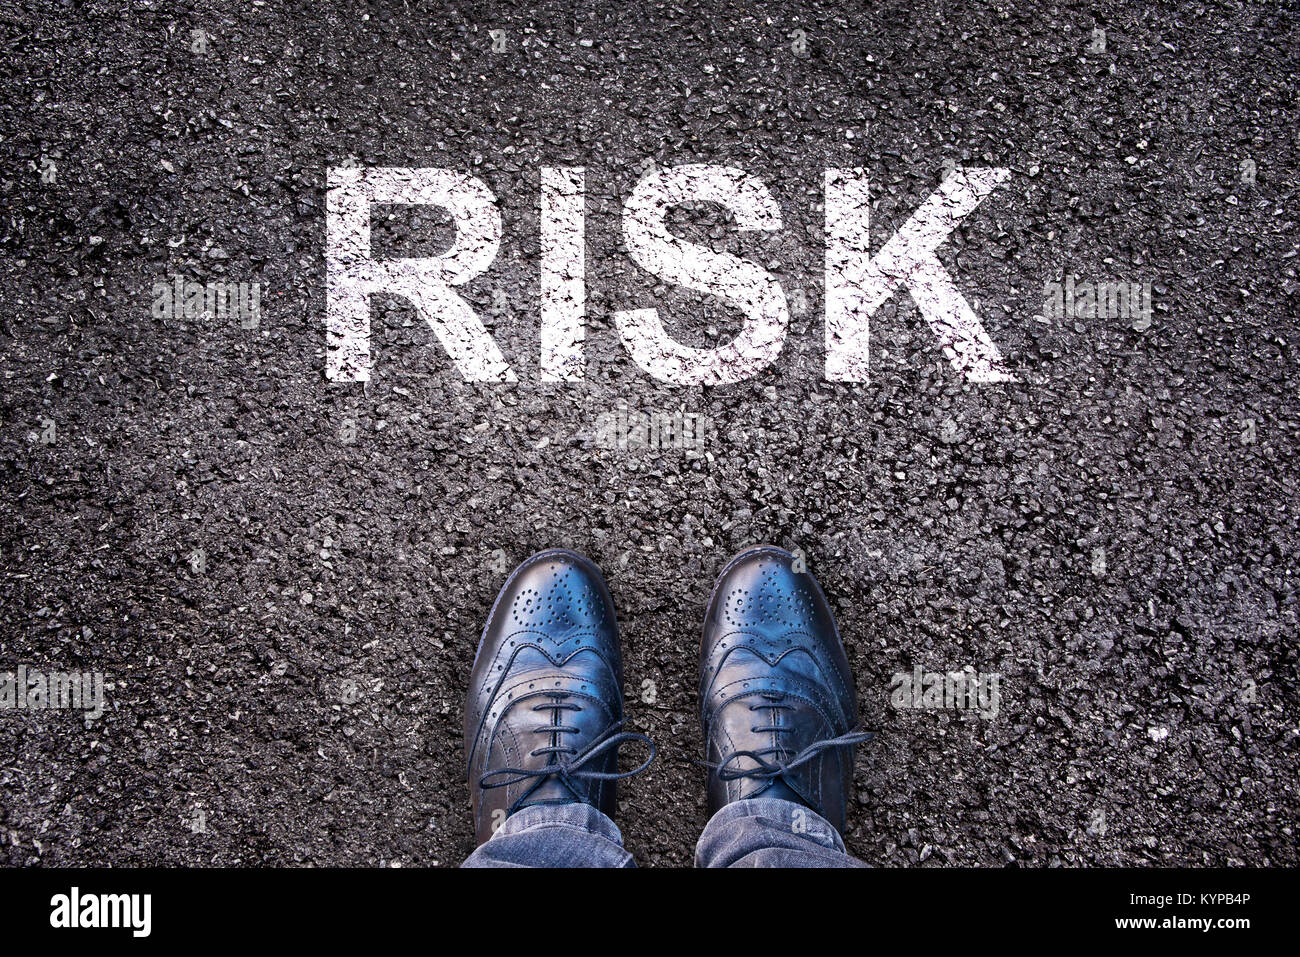 Wort Risiko auf eine asphaltierte Straße mit Beine und Schuhe geschrieben Stockfoto